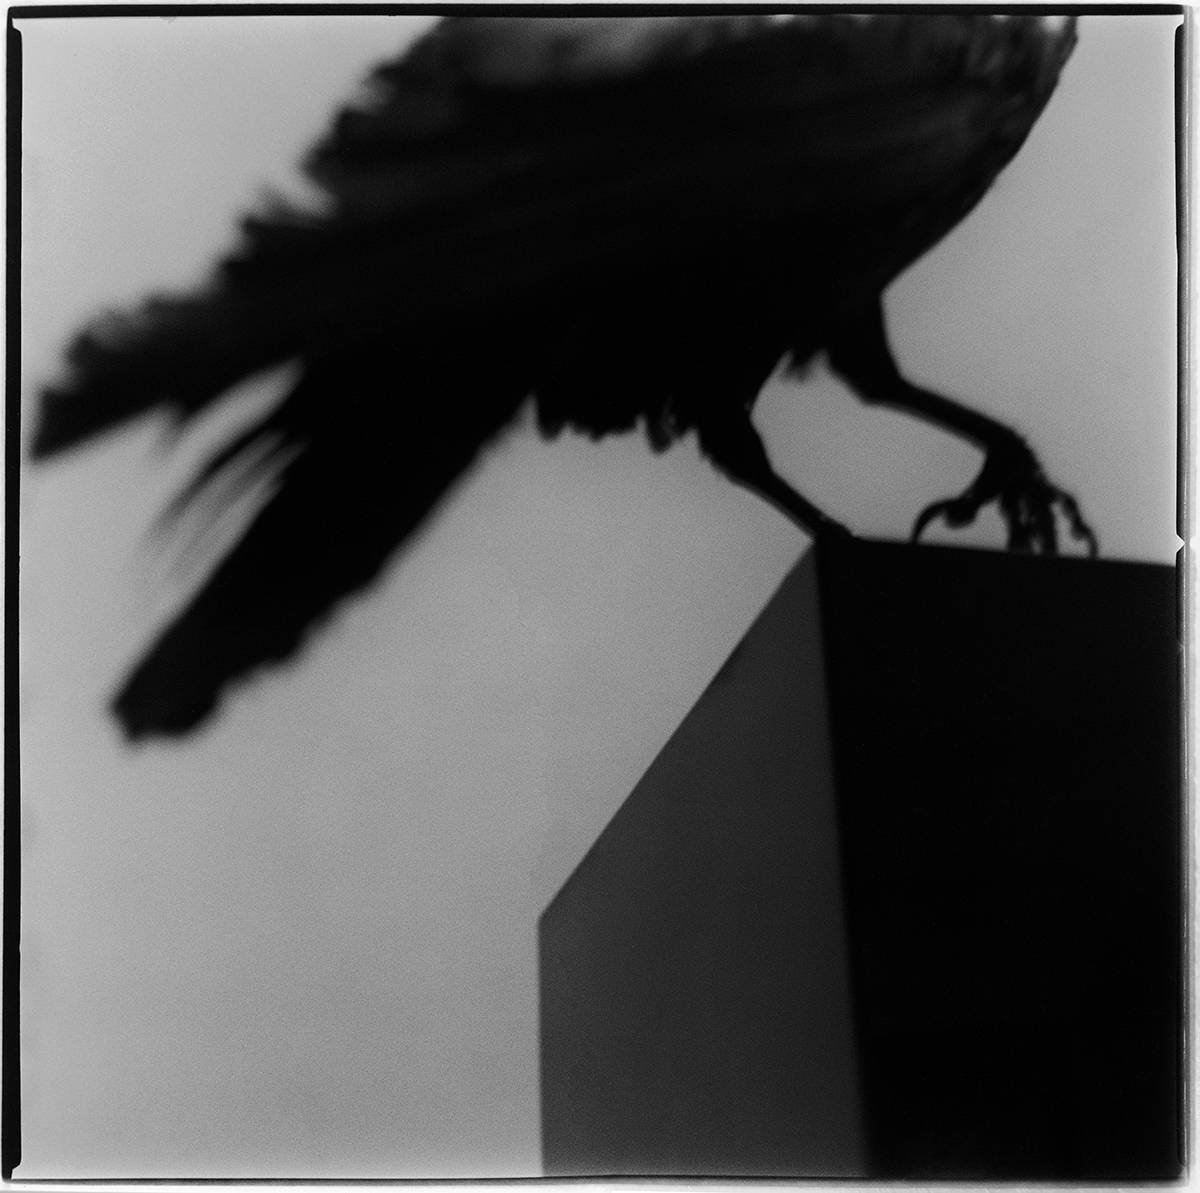 Monólogo con un cuervo © Alberto García-Alix. Cortesía del artista y de la Galería Juana de Aizpuru. © COLECCIONES Fundación MAPFRE